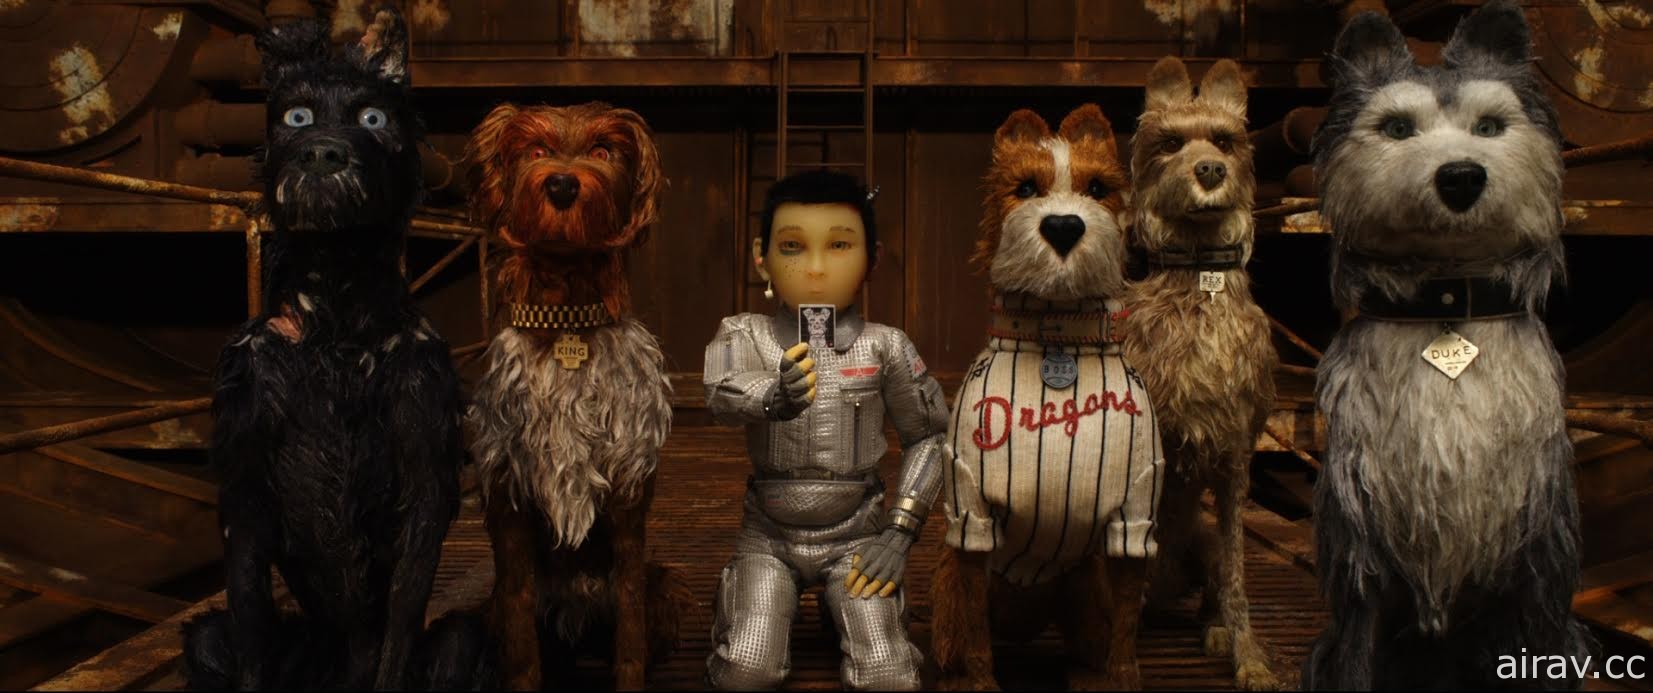 威斯安德森《犬之島》獲選為金馬奇幻影展開幕片 4 月 13 日正式揭幕